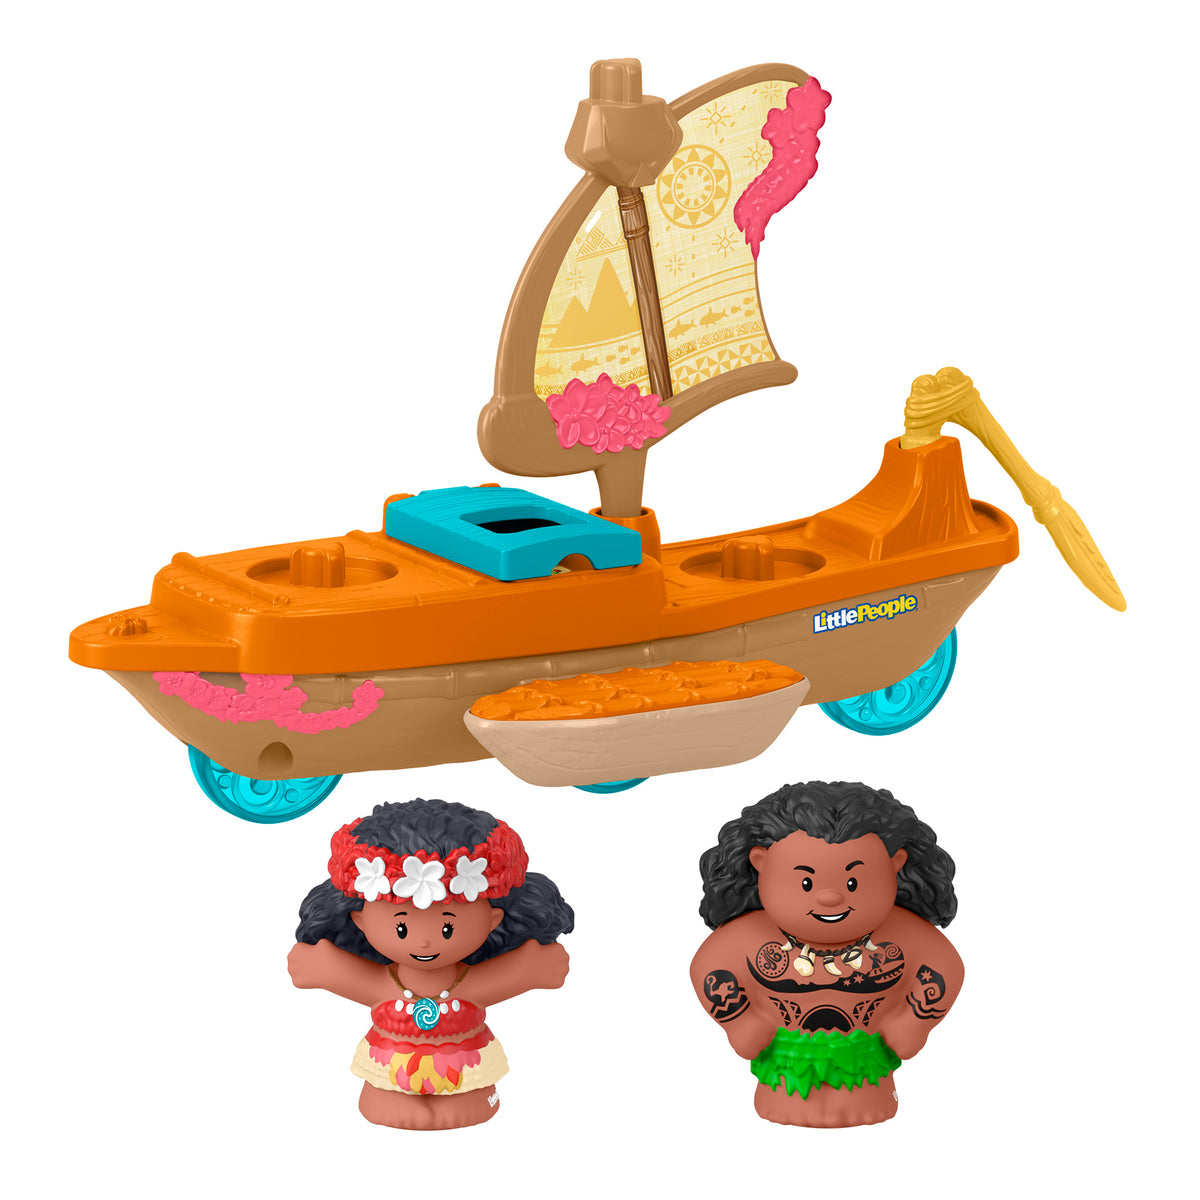 Little People Disney Princess Moana and Maui's Canoe